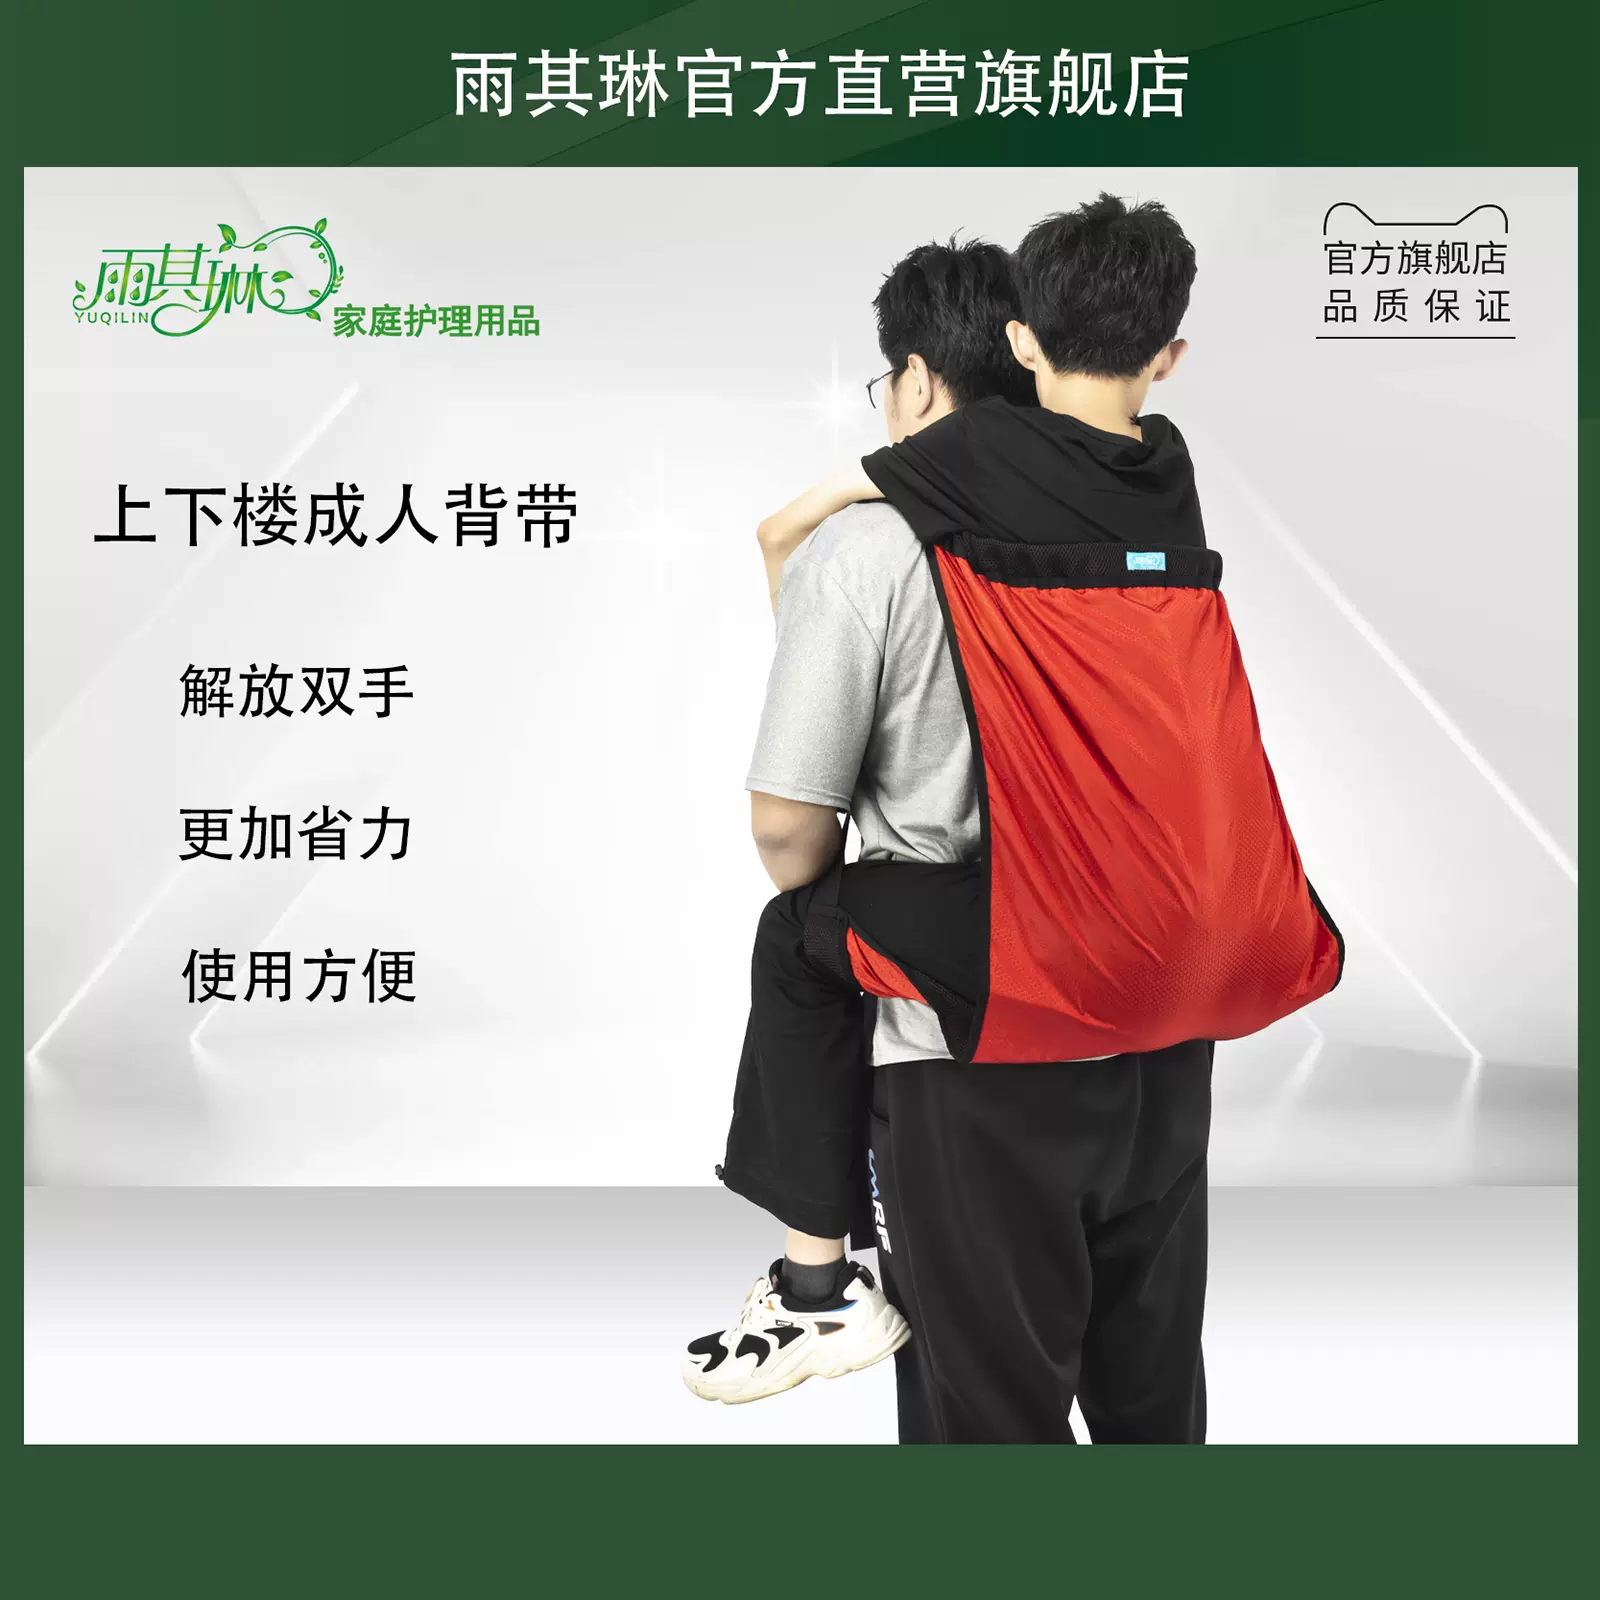 雨其琳背老人上下楼的背带瘫痪病人移位垫背病人的背带上下楼工具-Taobao